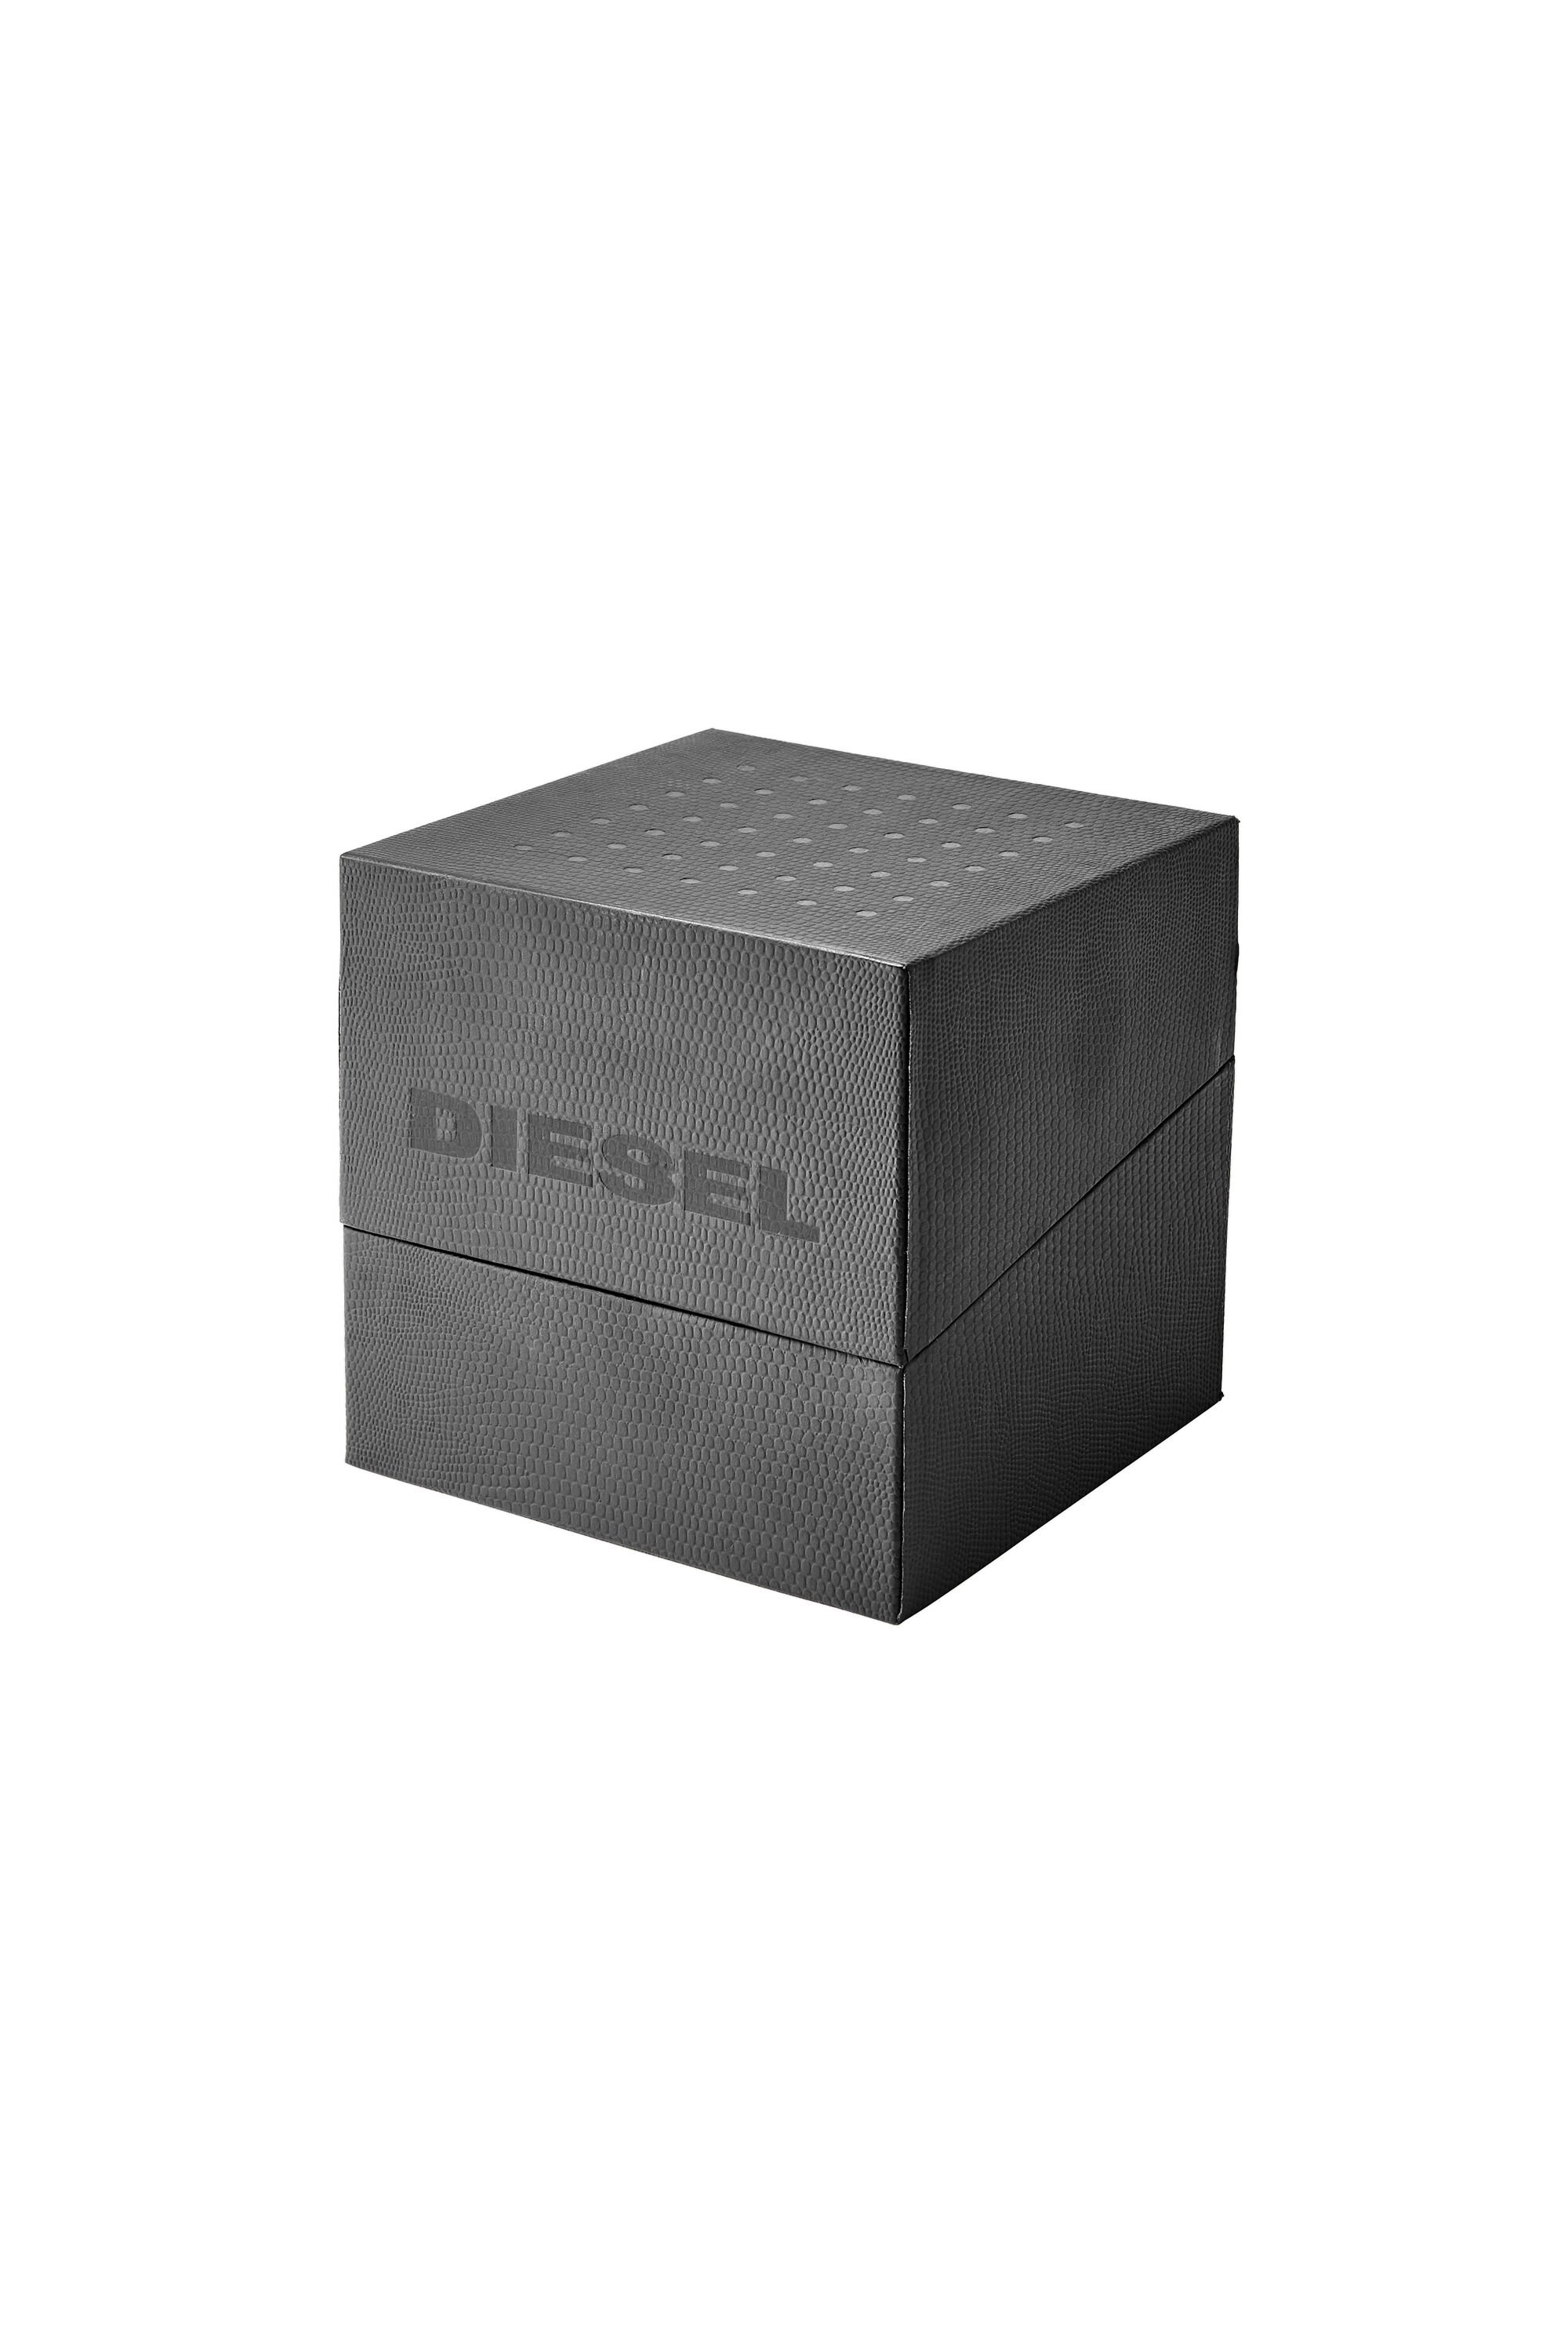 Diesel - DZ4523, Grey - Image 5